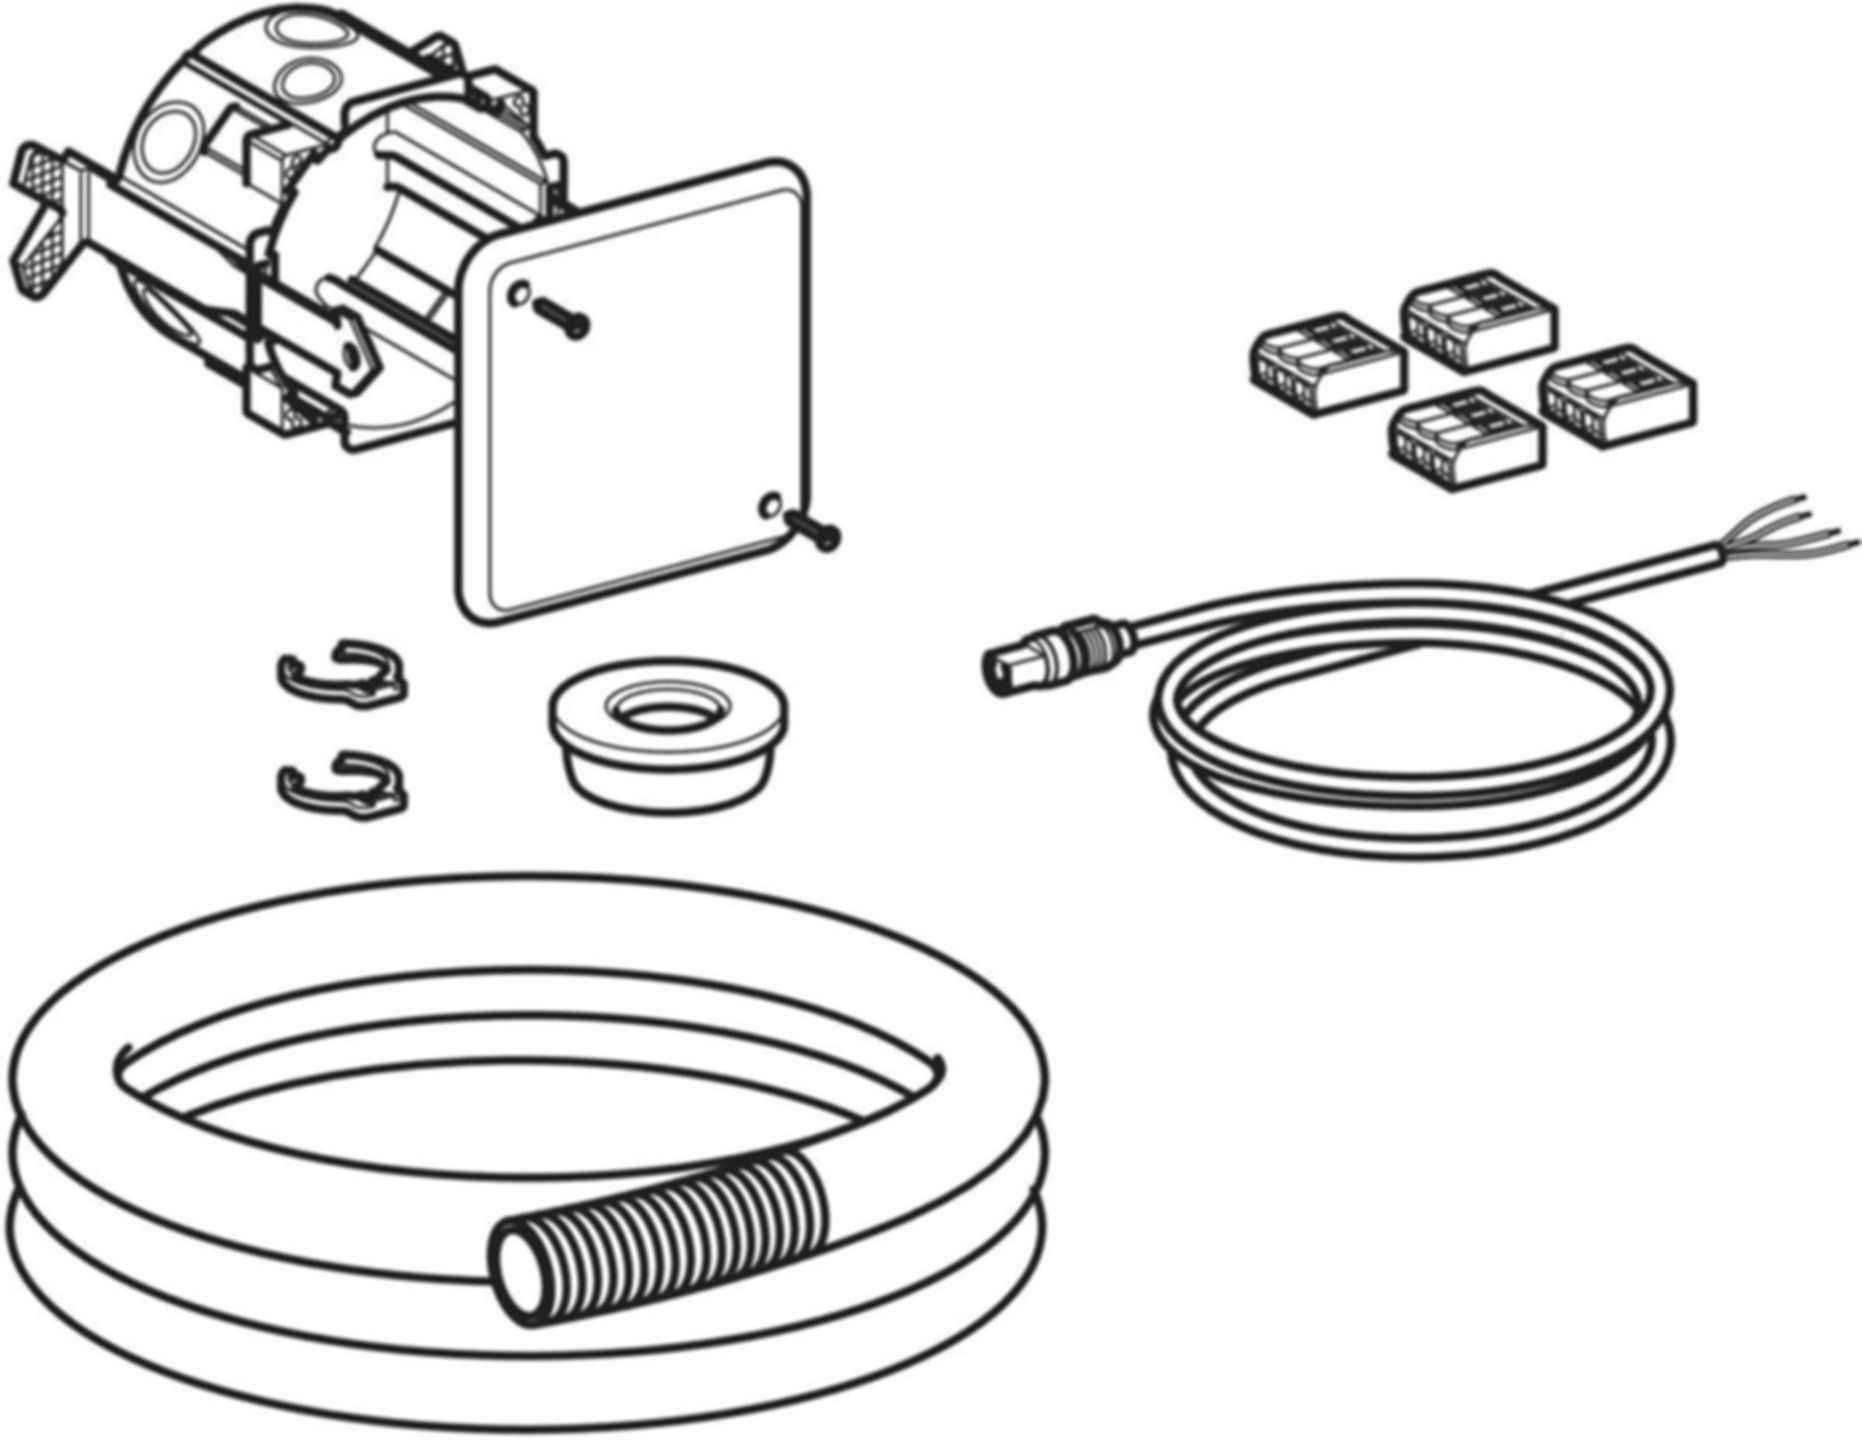 Set Kabel für Schnittstelle GEBUS 616.238.00.1 zu Hygienespülung HS30 und HS50 - Geberit Systemventile / Armaturen